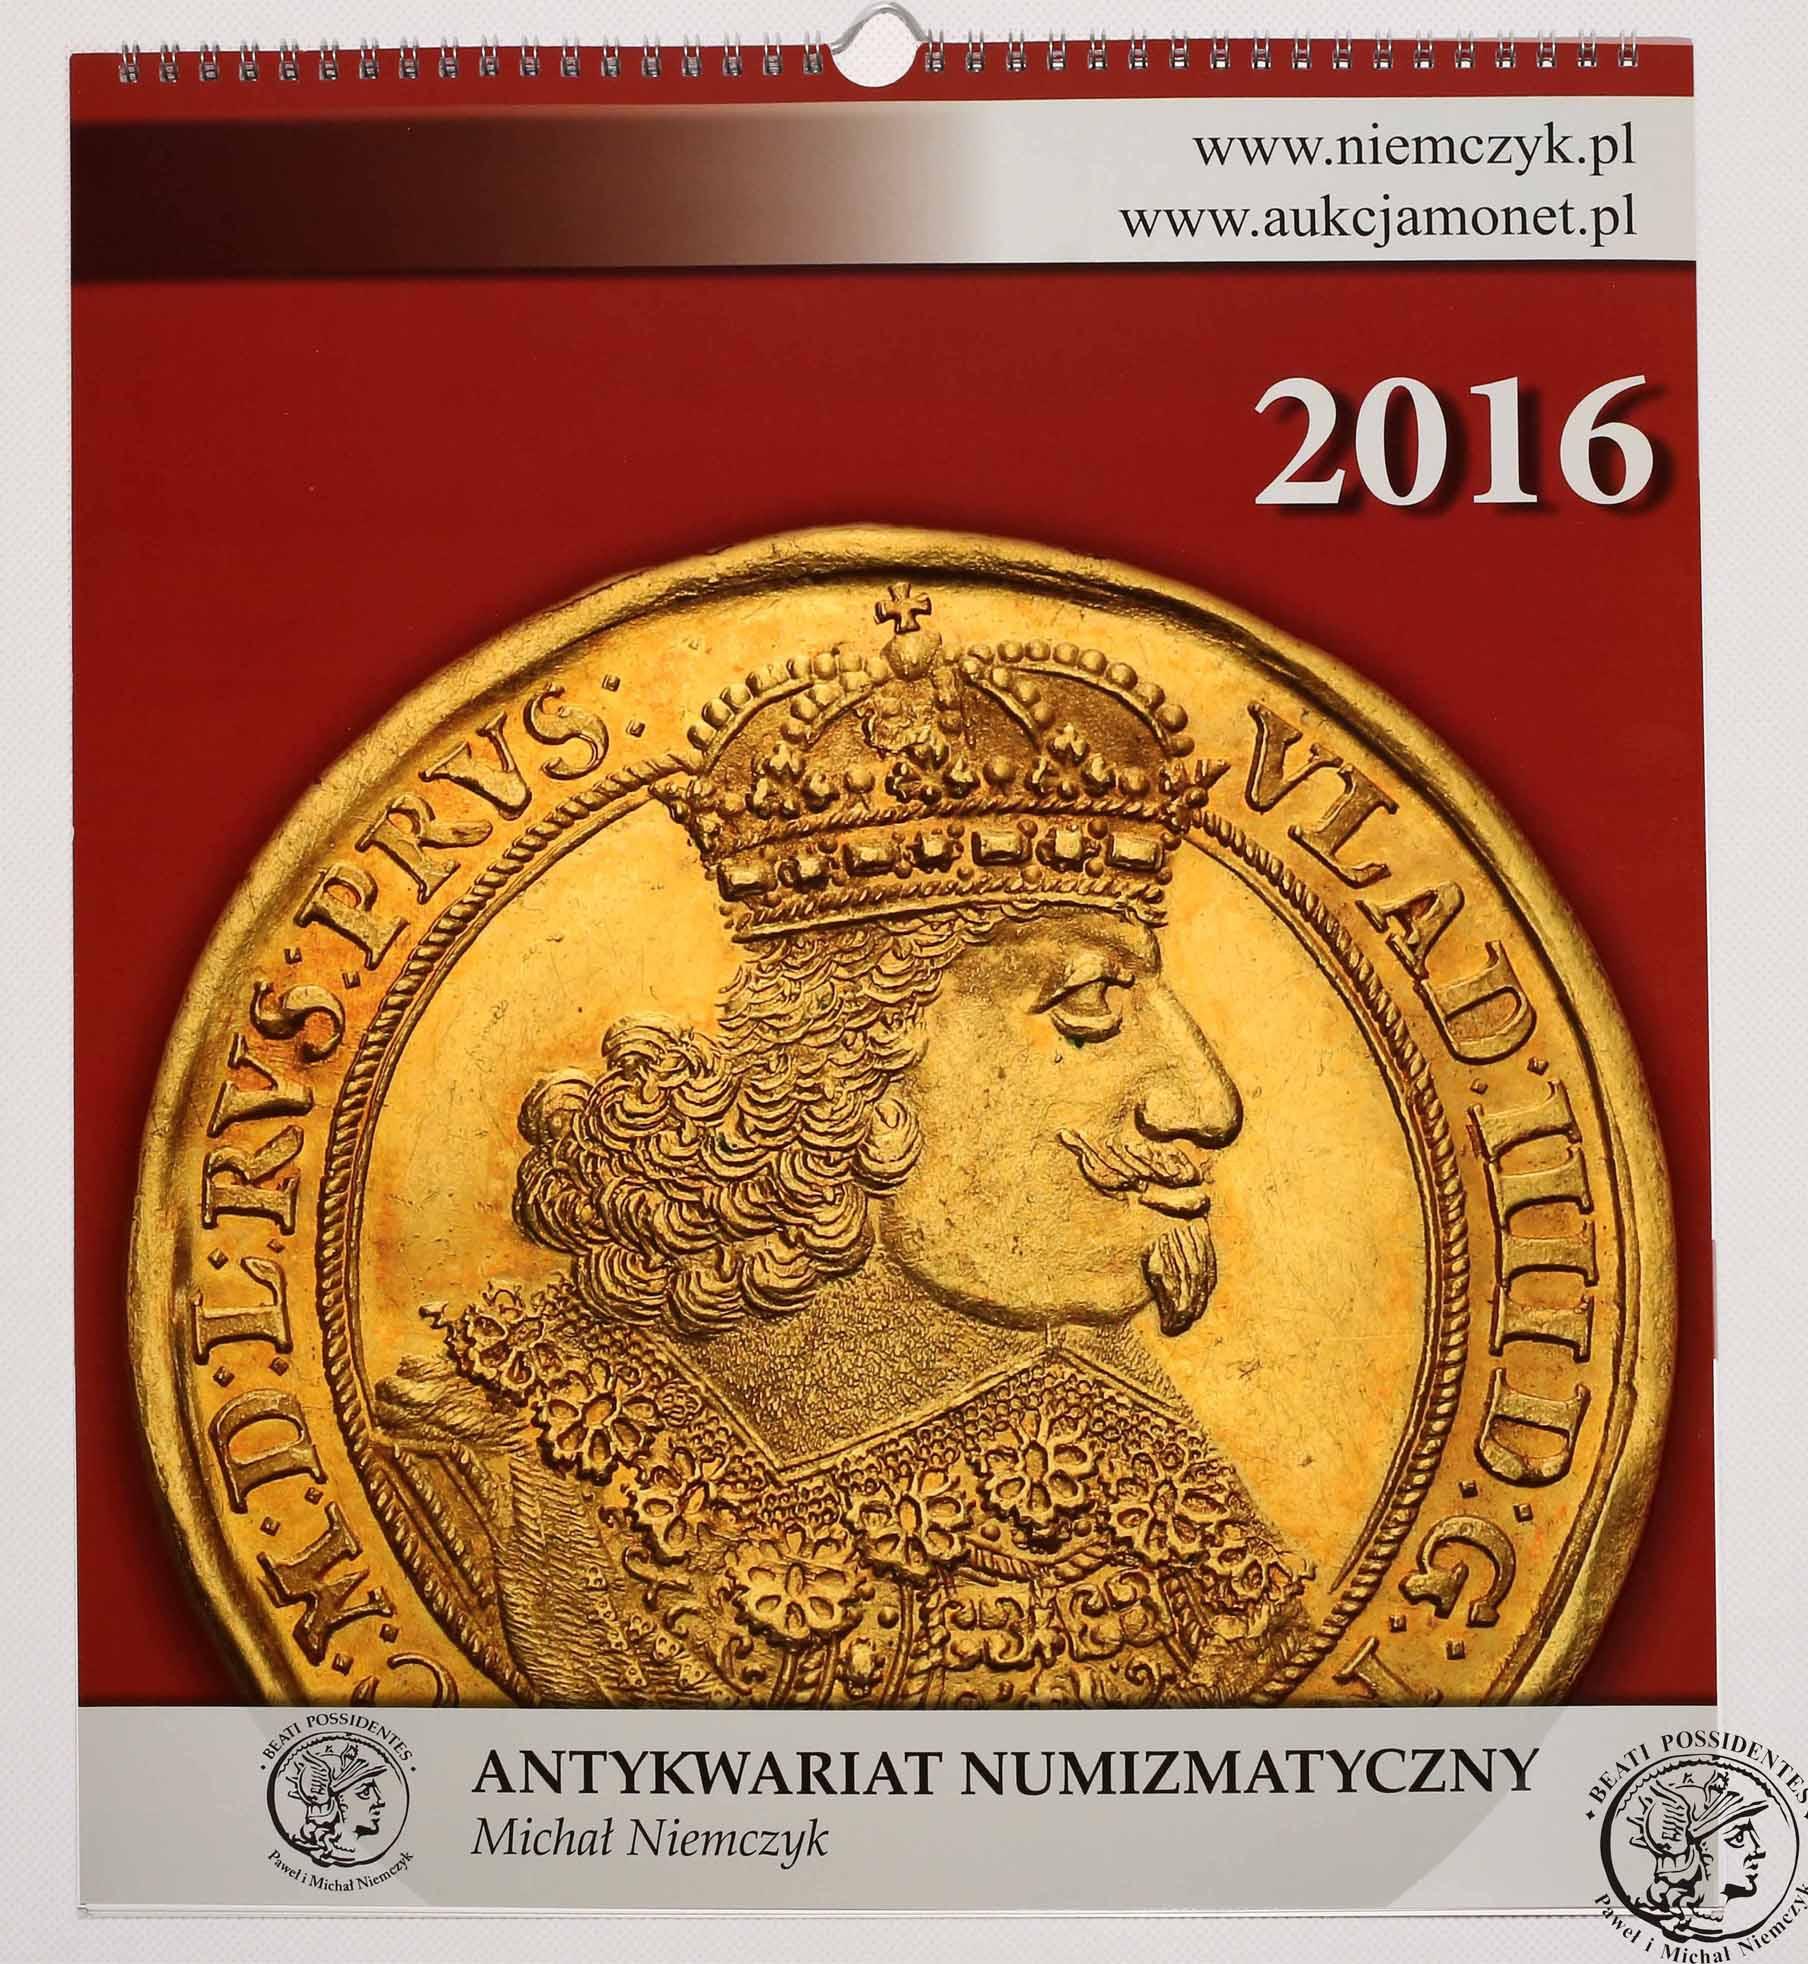 Kalendarz numizmatyczny 2016 NIEMCZYK - limitowana edycja!